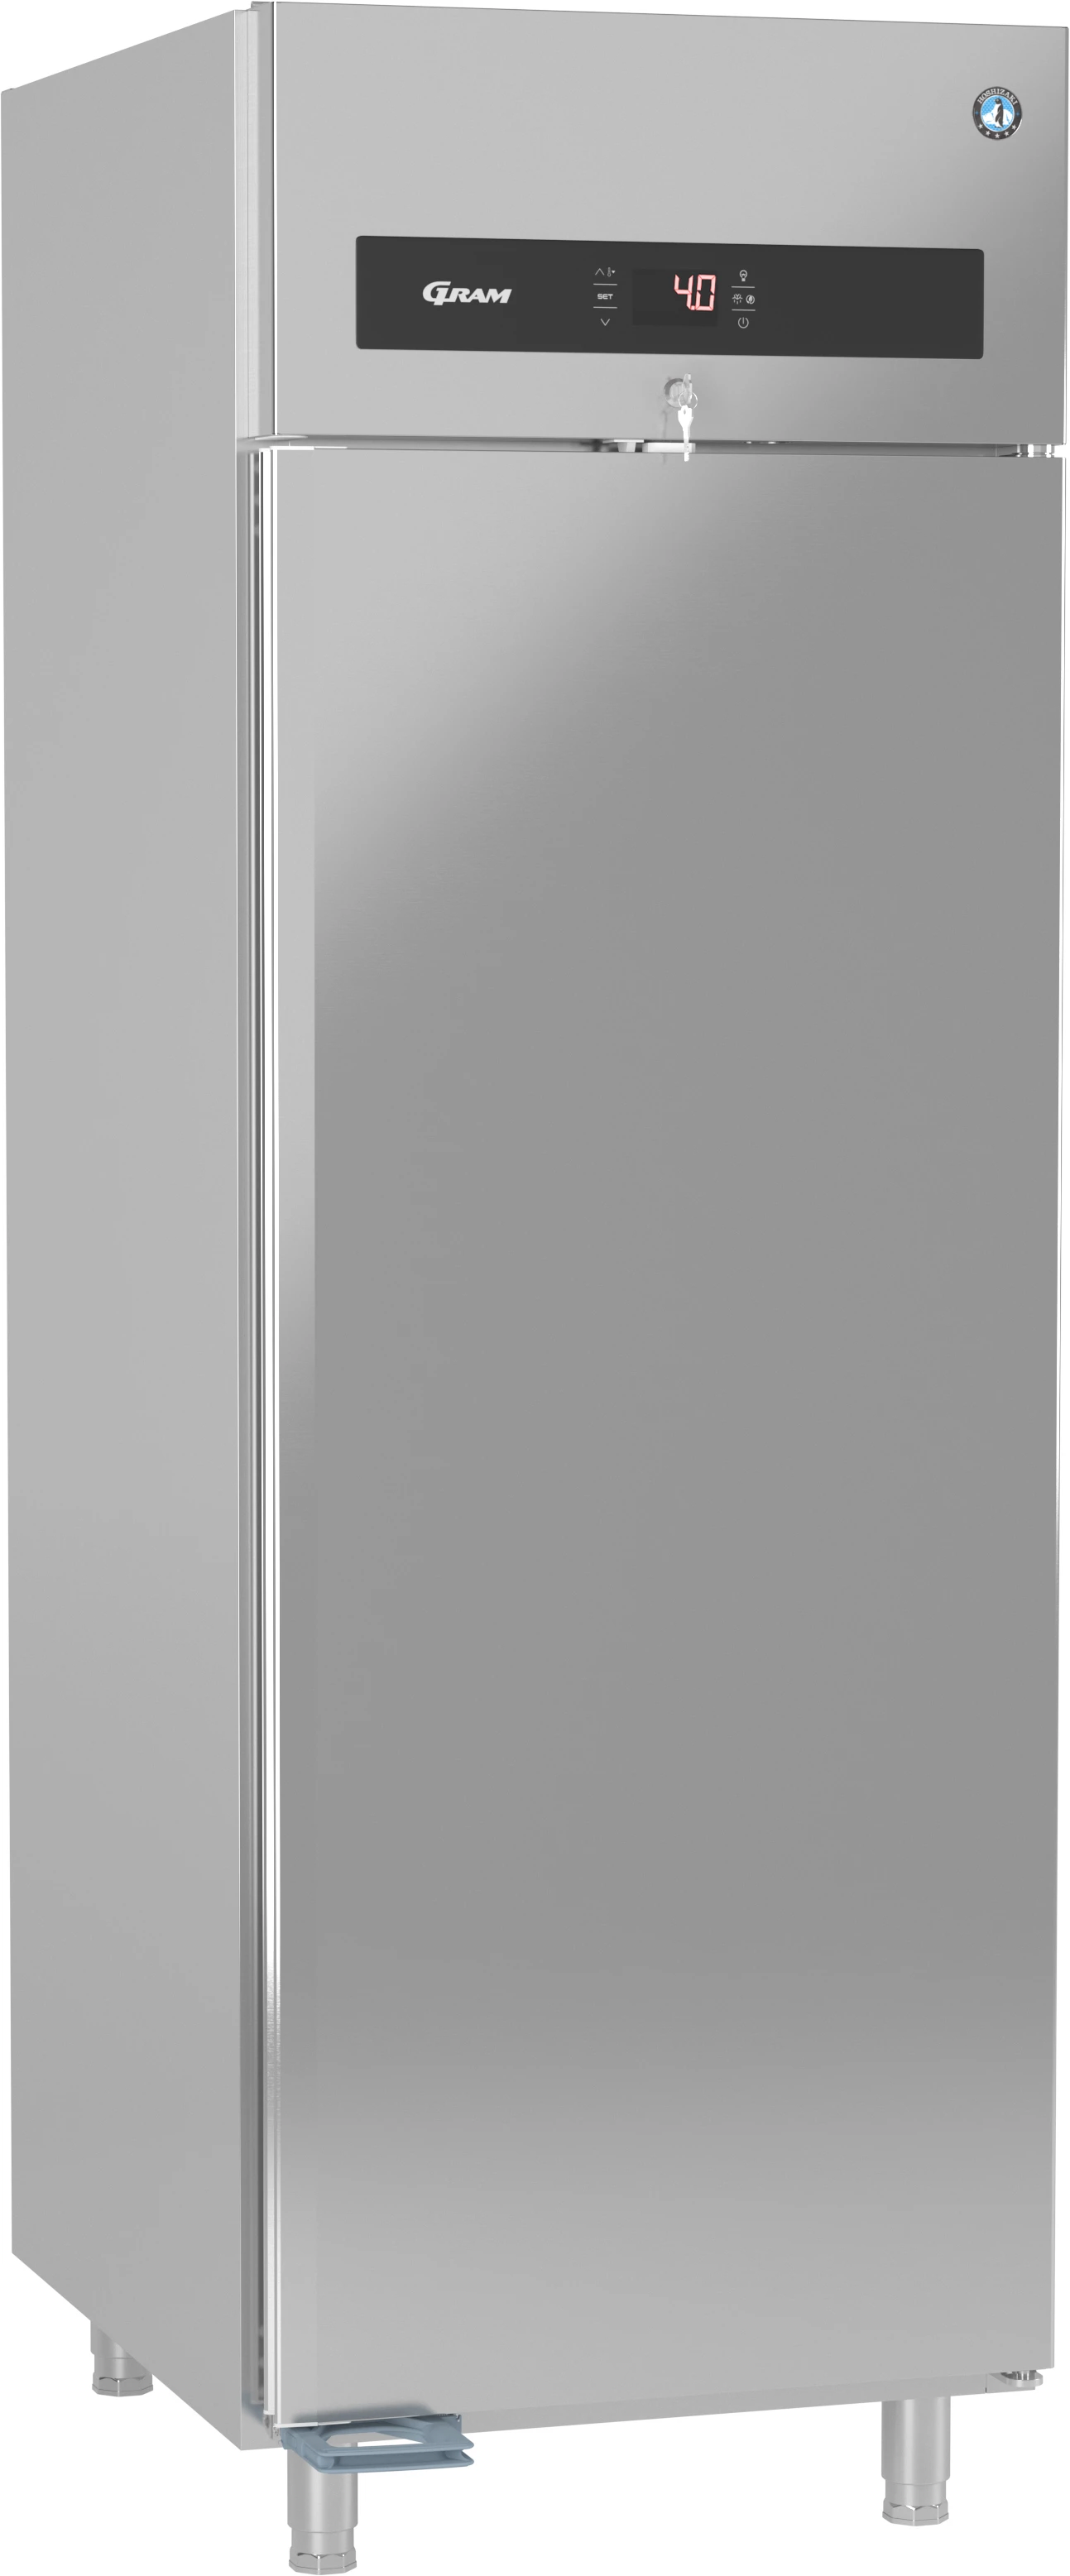 Gram Premier K70 L DR køleskab